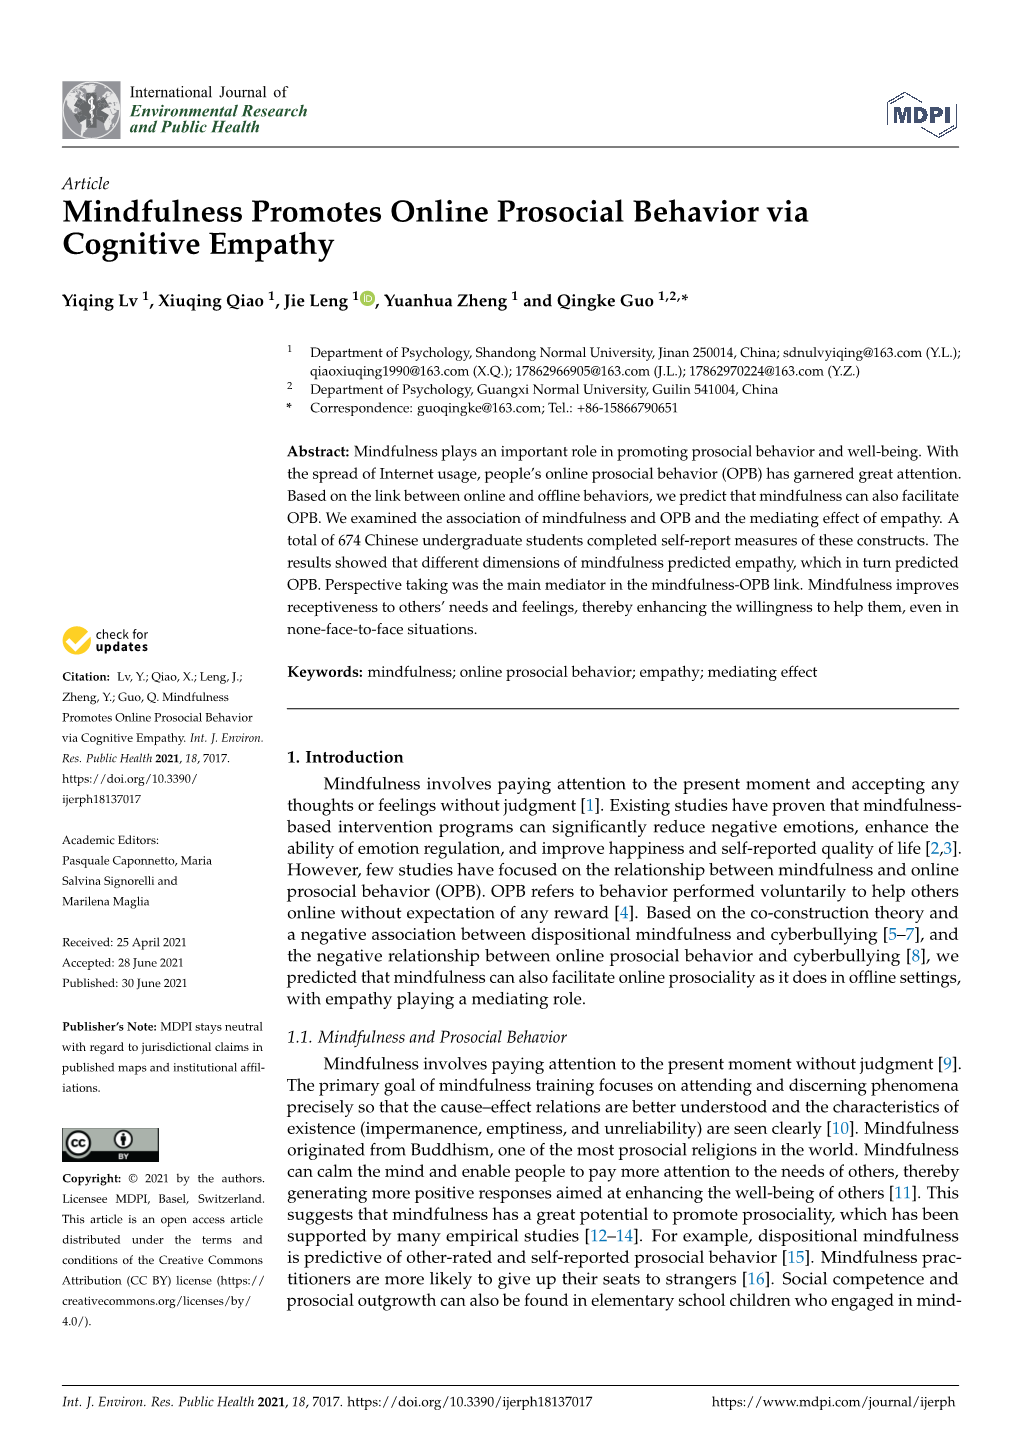 Mindfulness Promotes Online Prosocial Behavior Via Cognitive Empathy